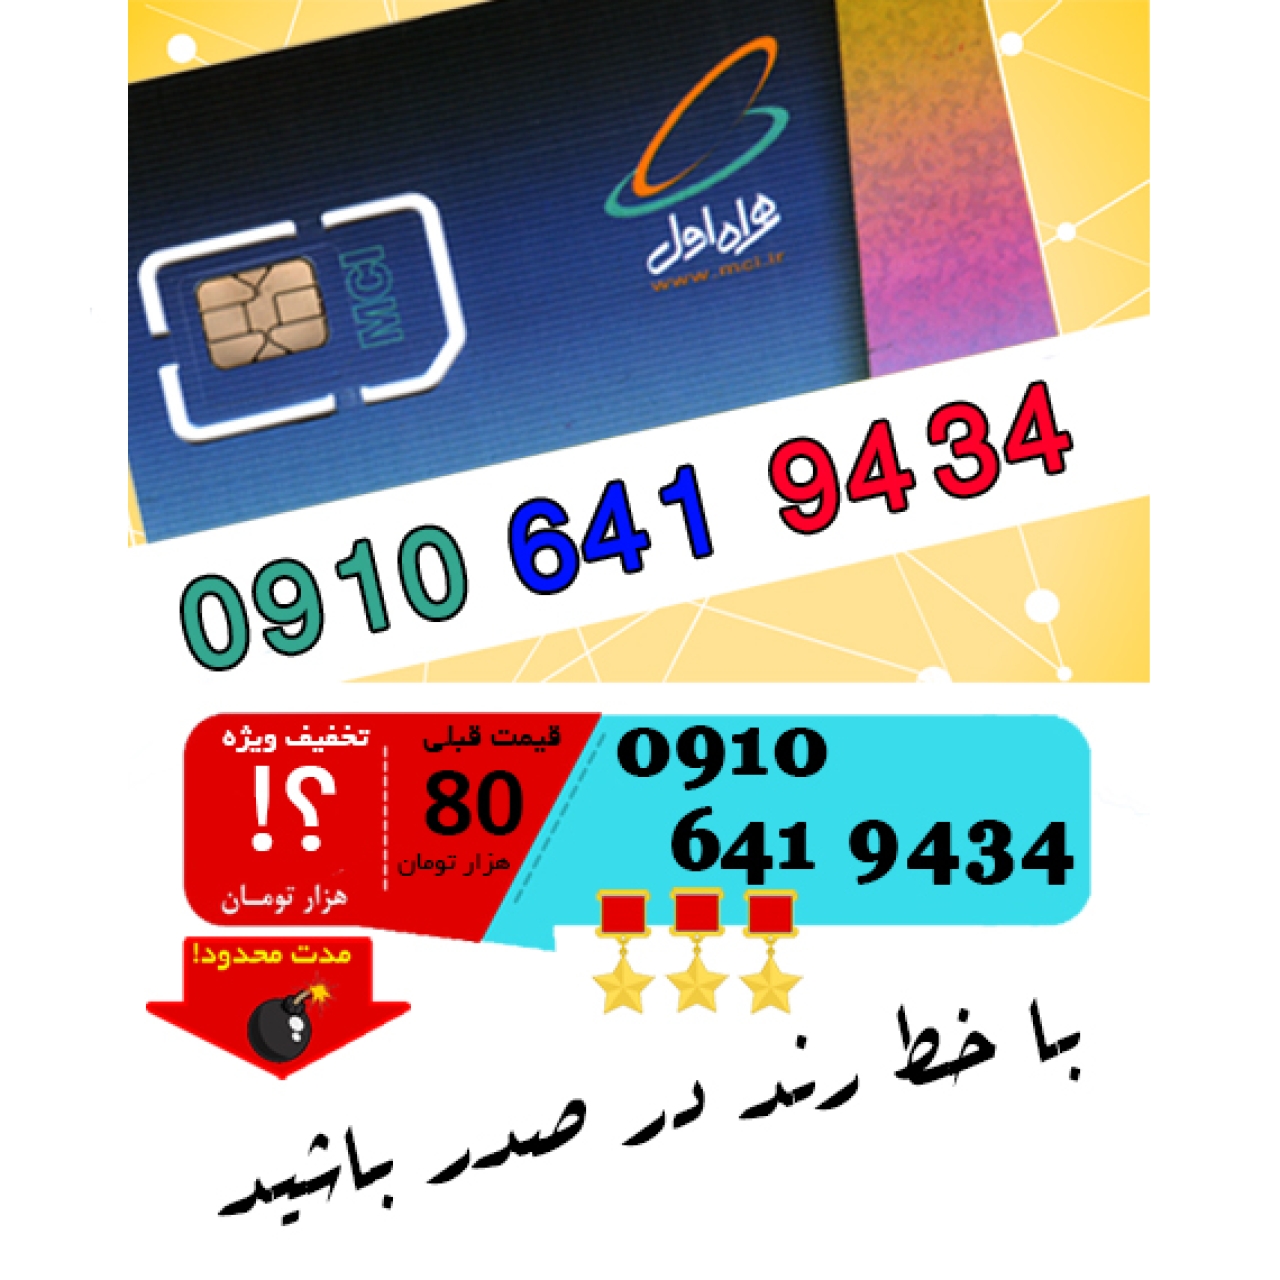 سیم کارت اعتباری رند همراه اول 09106419434